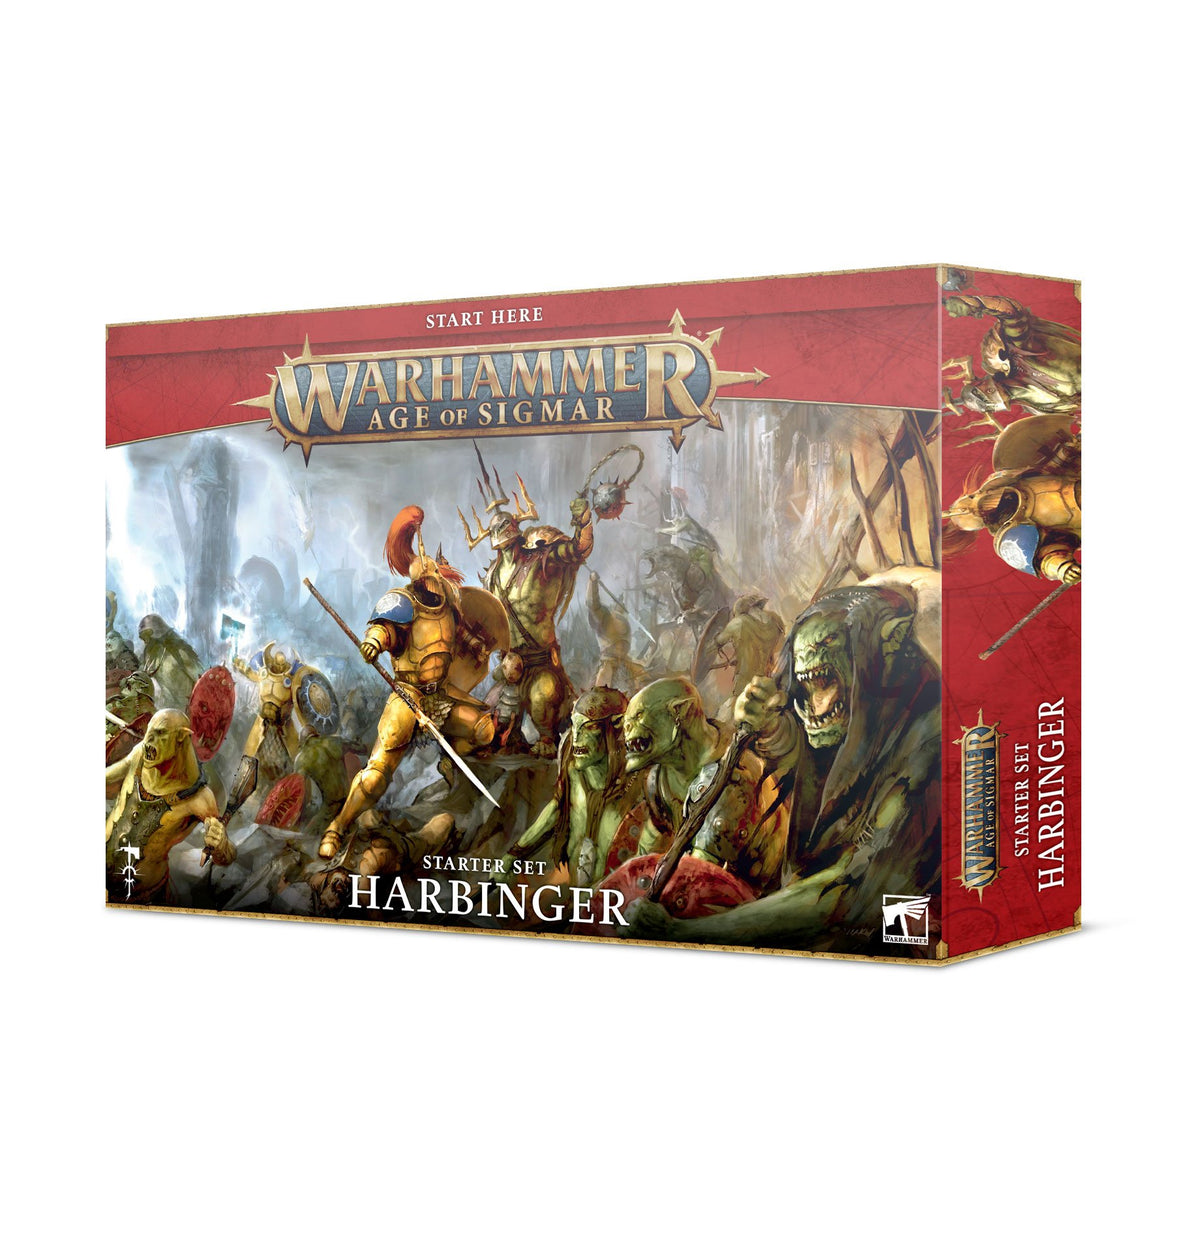 Starter Set - Harbinger (Warhammer Age of Sigmar)